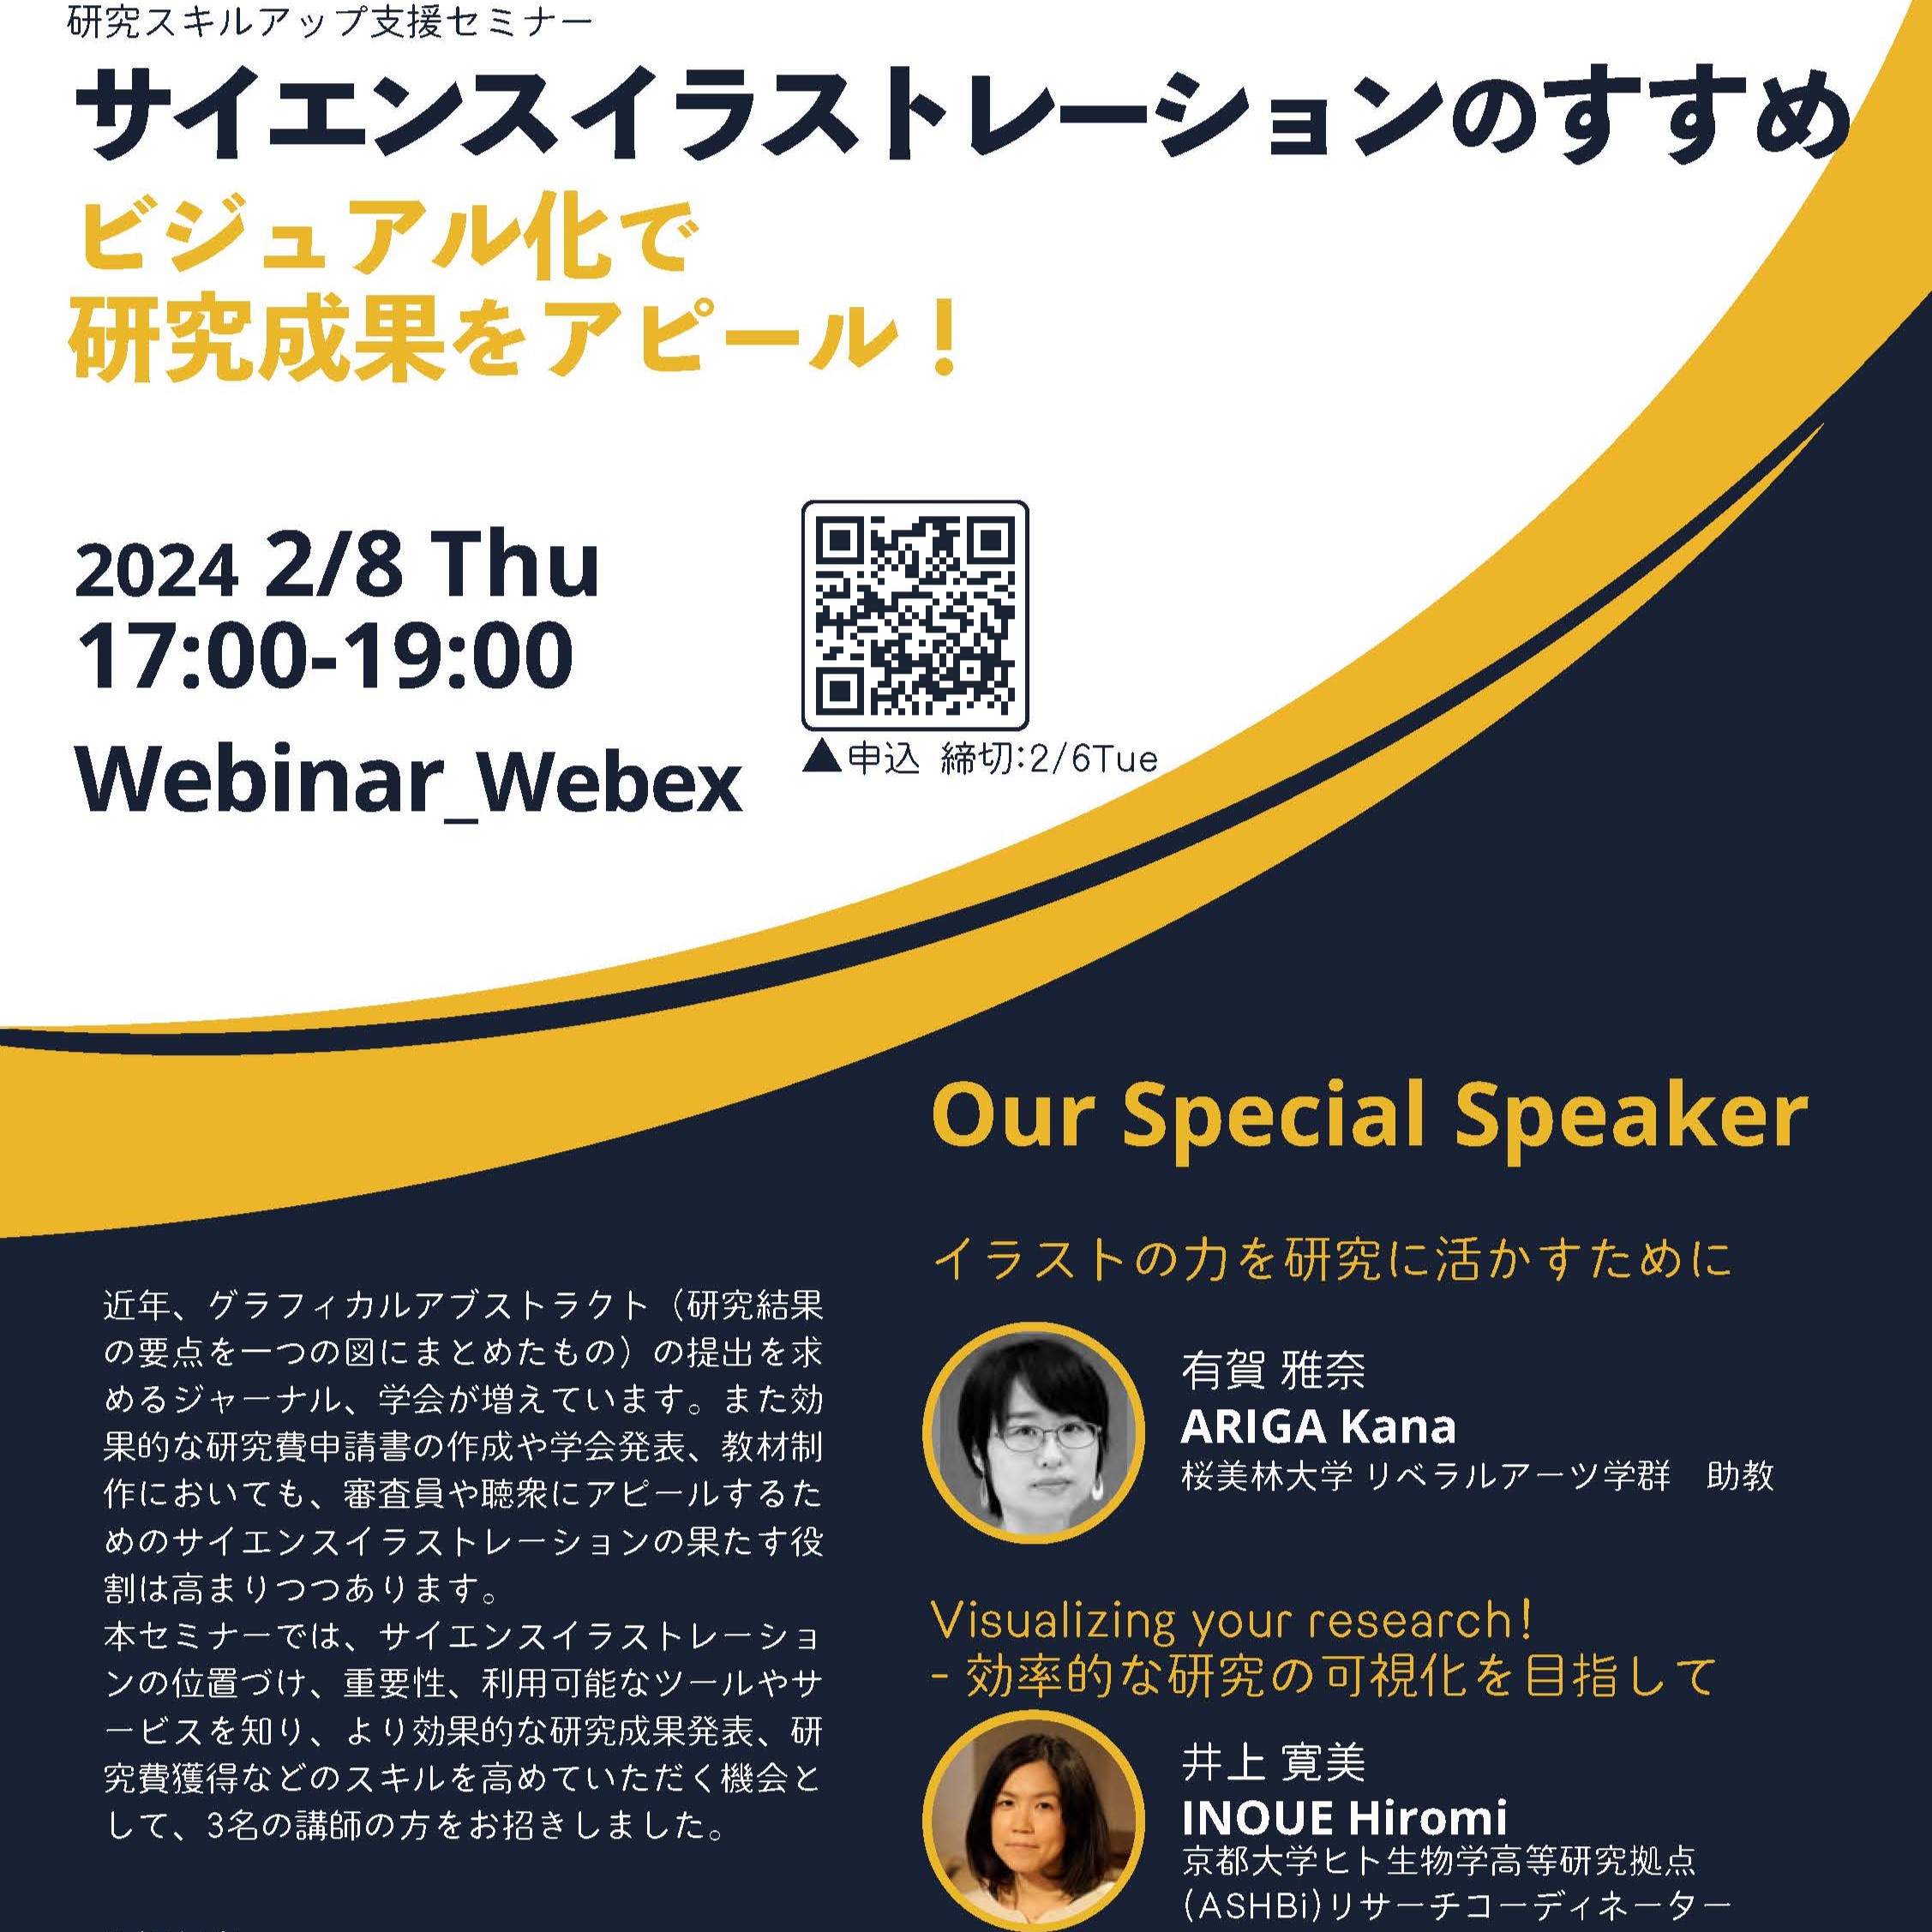 井上寛美 リサーチコーディネーターが、日本医科大学主催の「研究スキルアップ支援セミナー」で招待講演を行いました